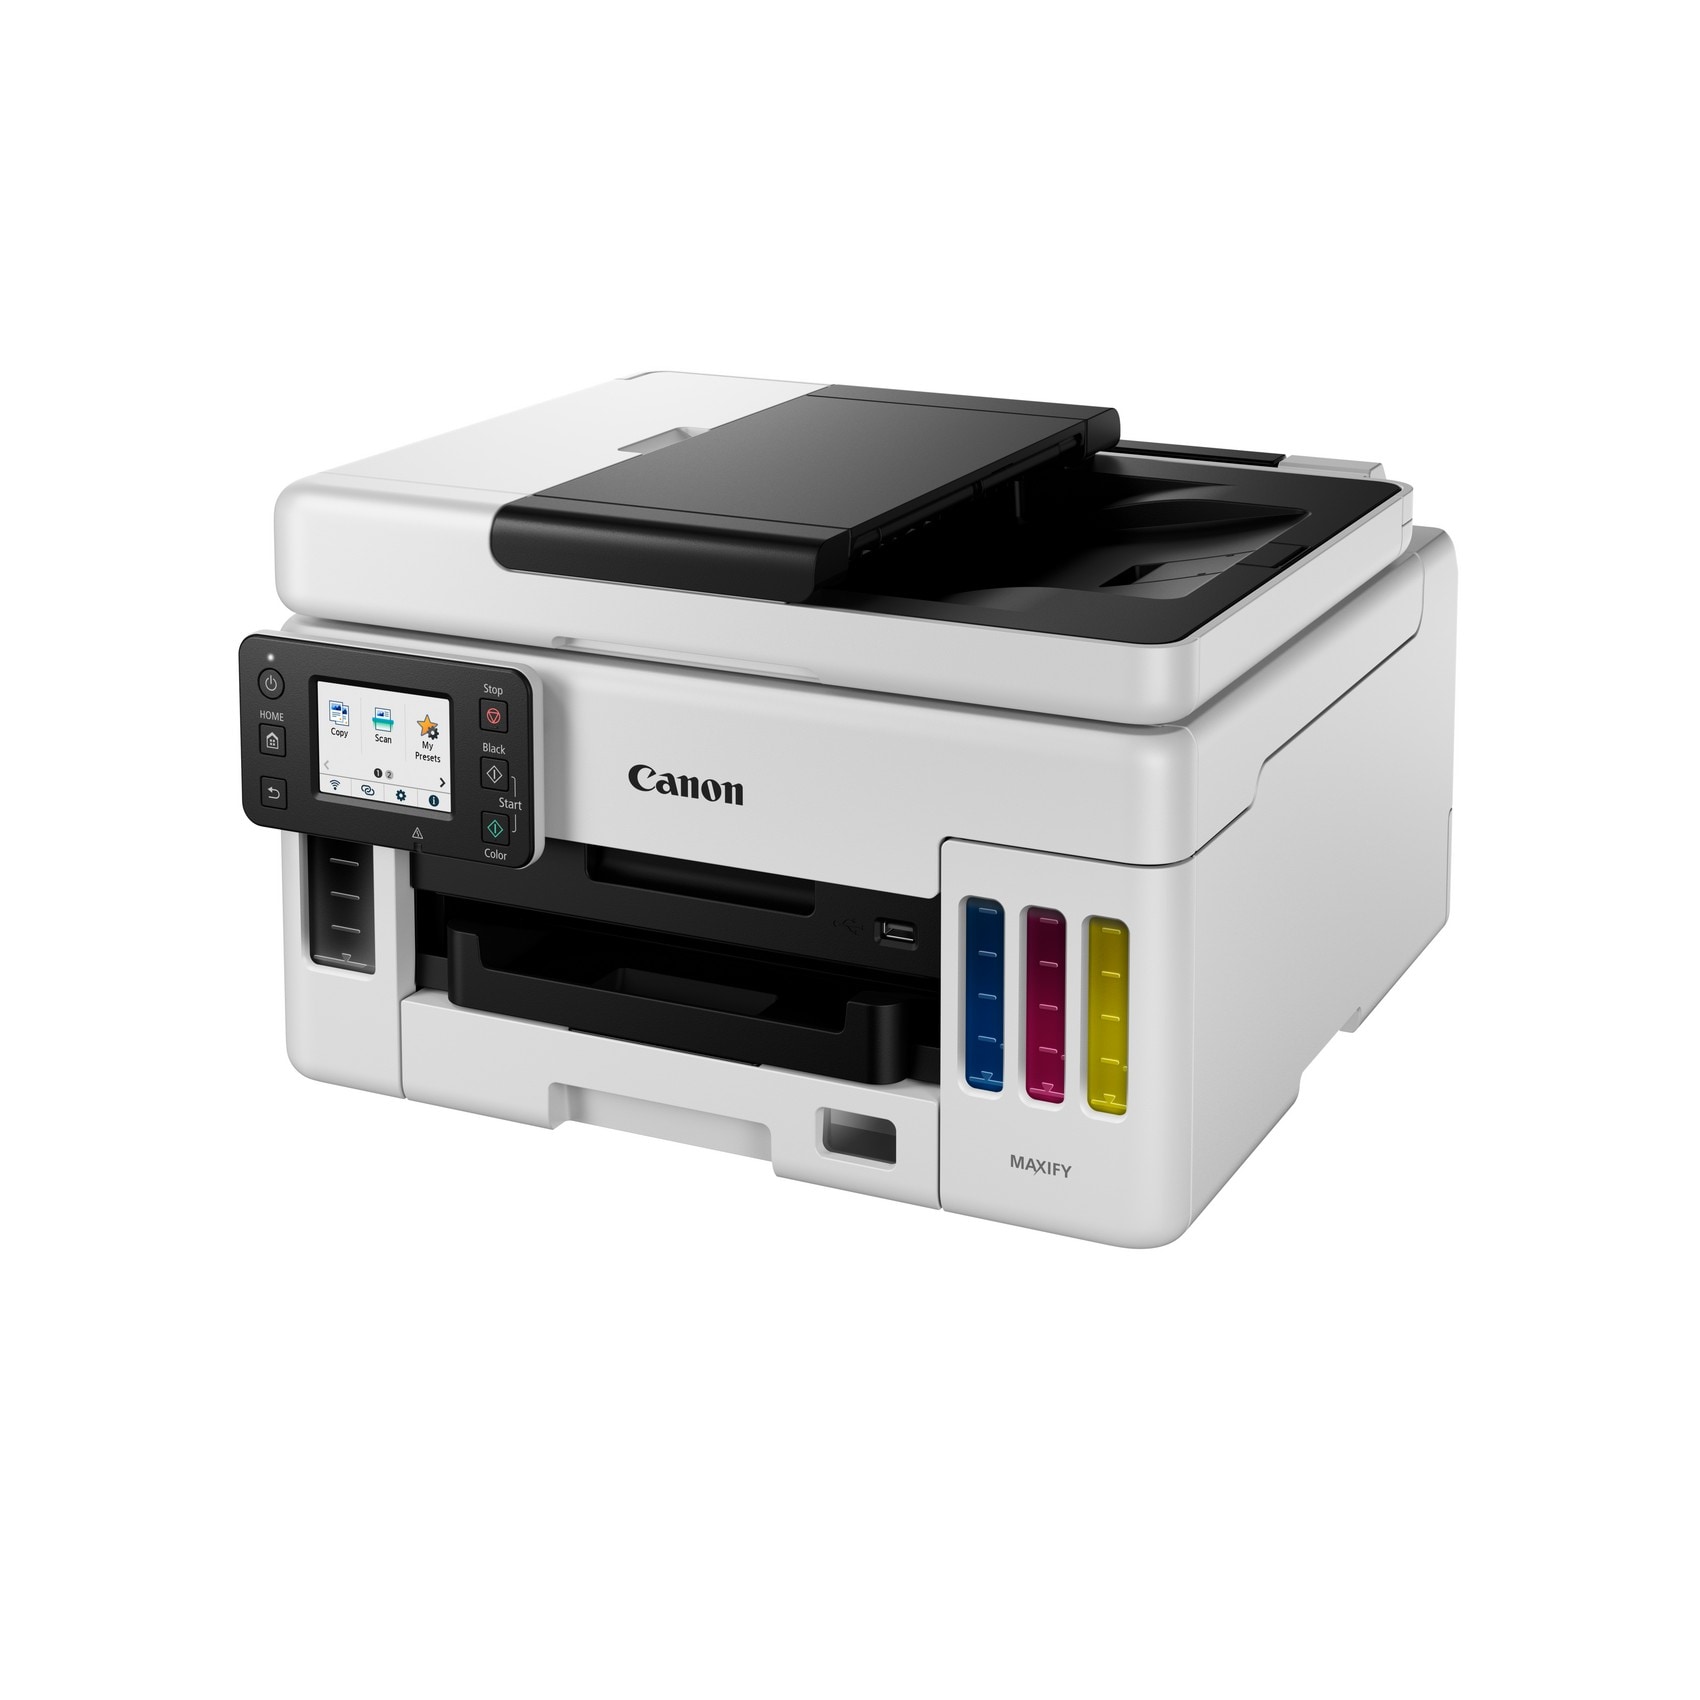 MAXIFY Cyberport GX6050 Kopierer Multifunktionsdrucker Scanner WLAN Canon USB LAN ++